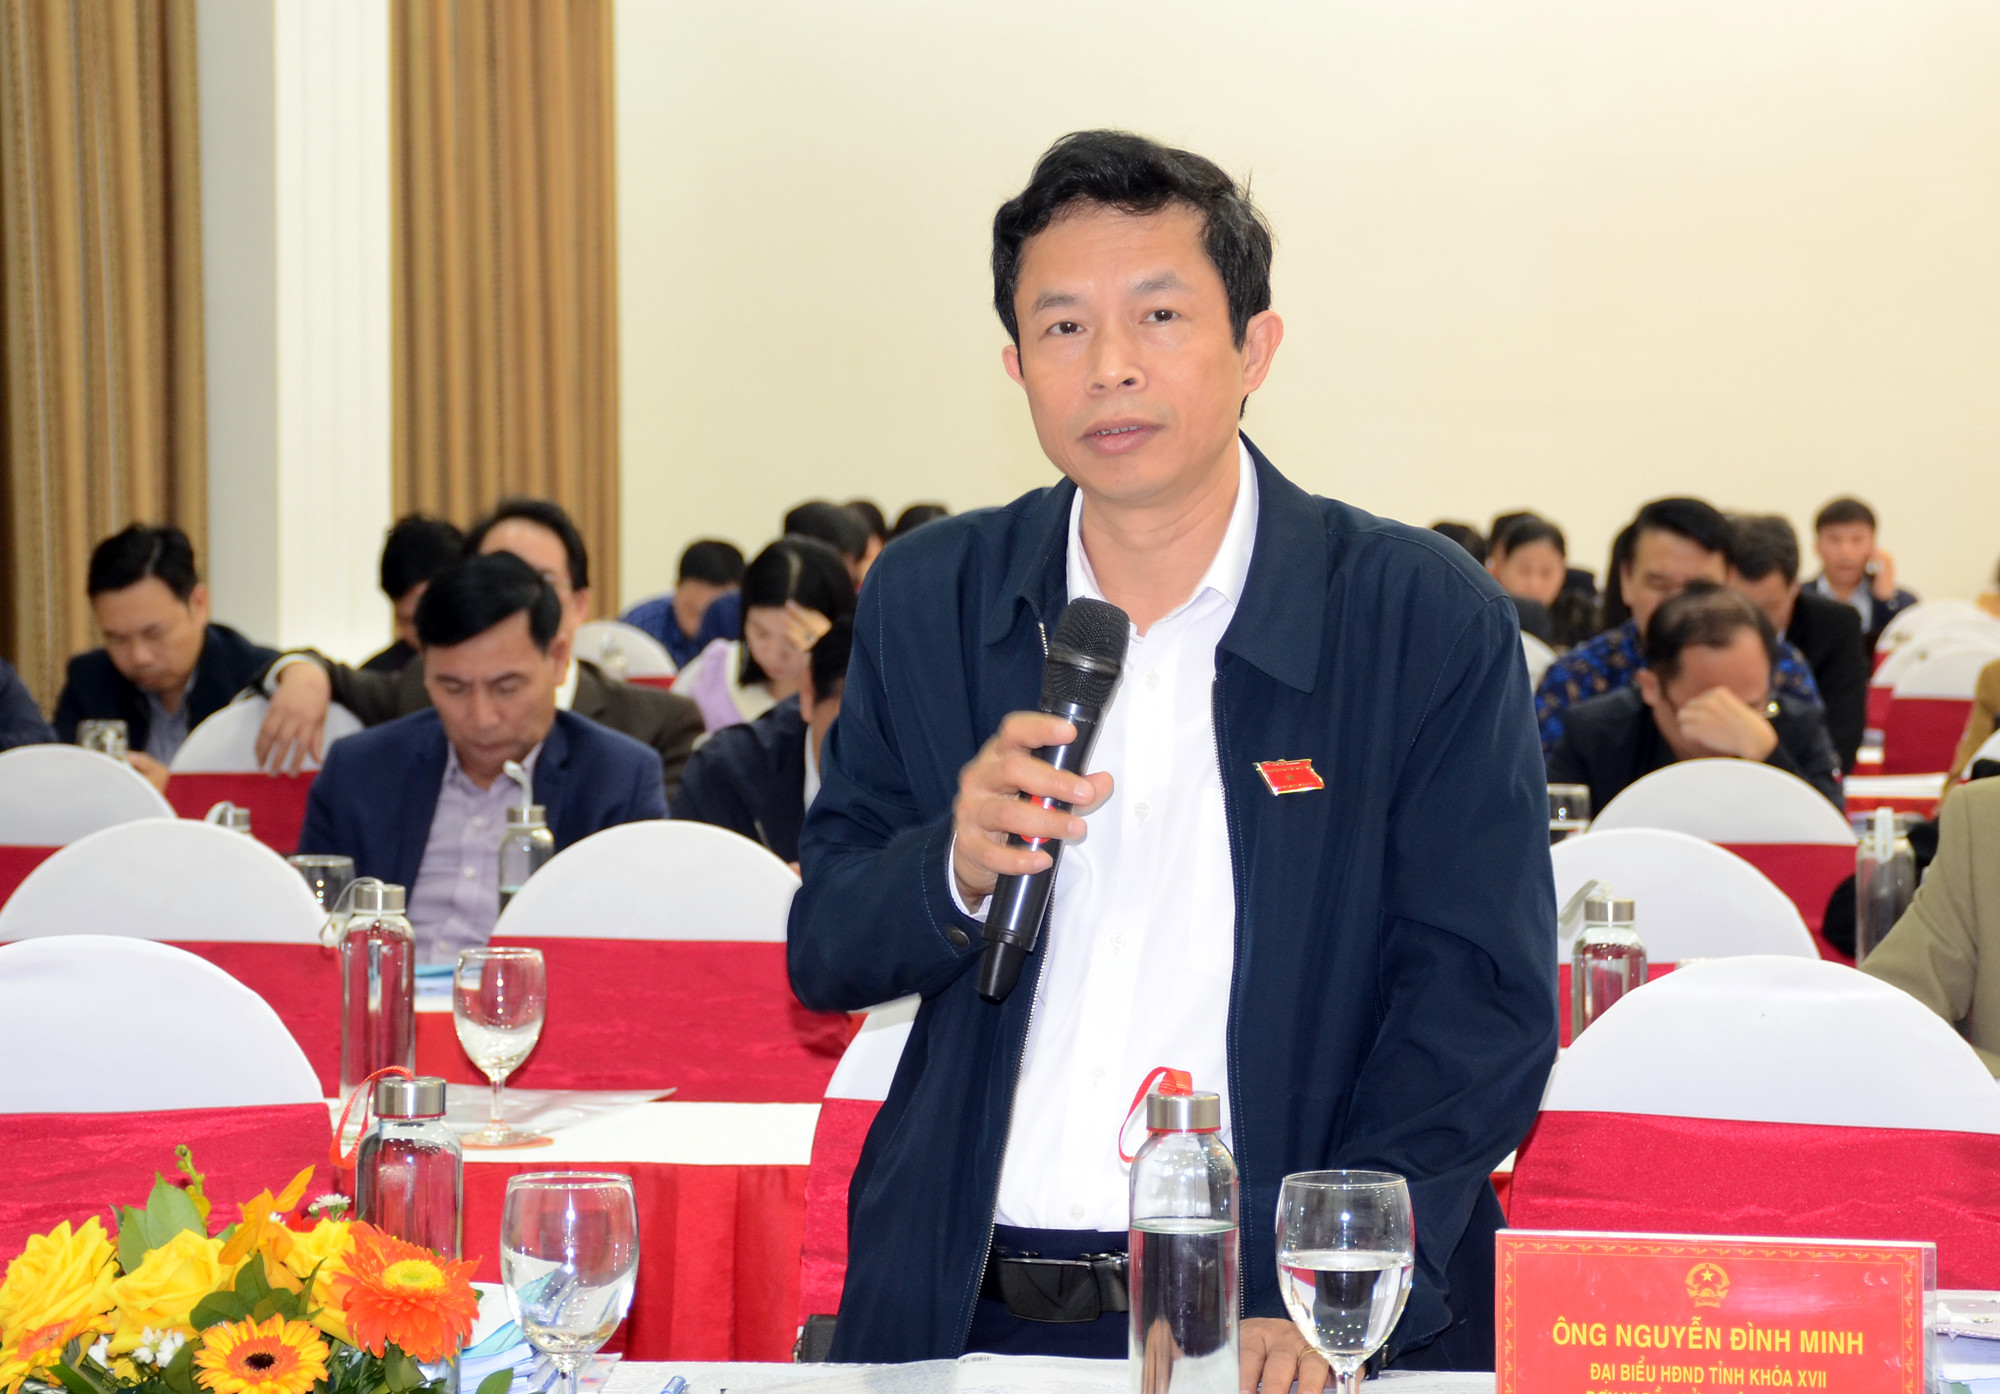 Đại biểu Vương Quanh Minh, Bí thư huyện ủy Quỳ Châu. Ảnh: Thành Chung